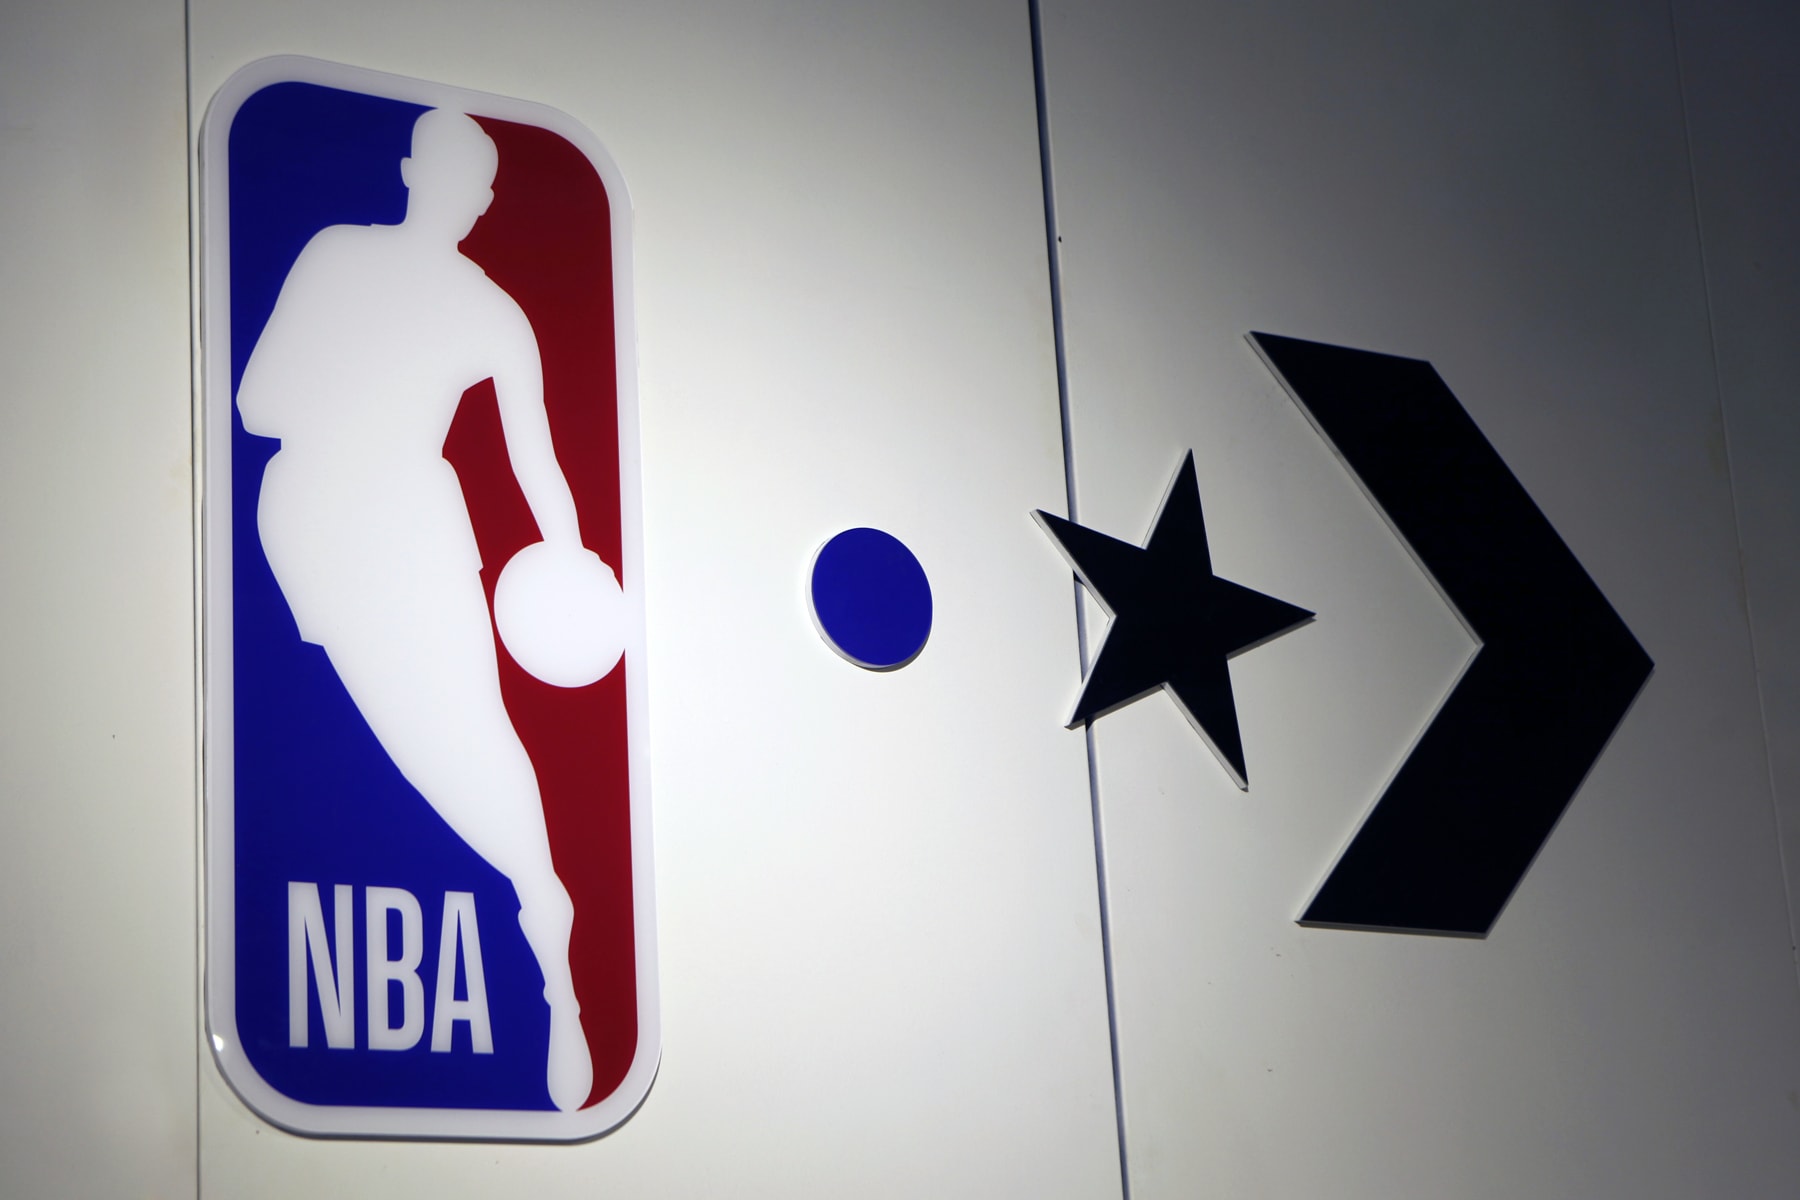 走進 Converse x NBA 聯名系列發布會現場回顧